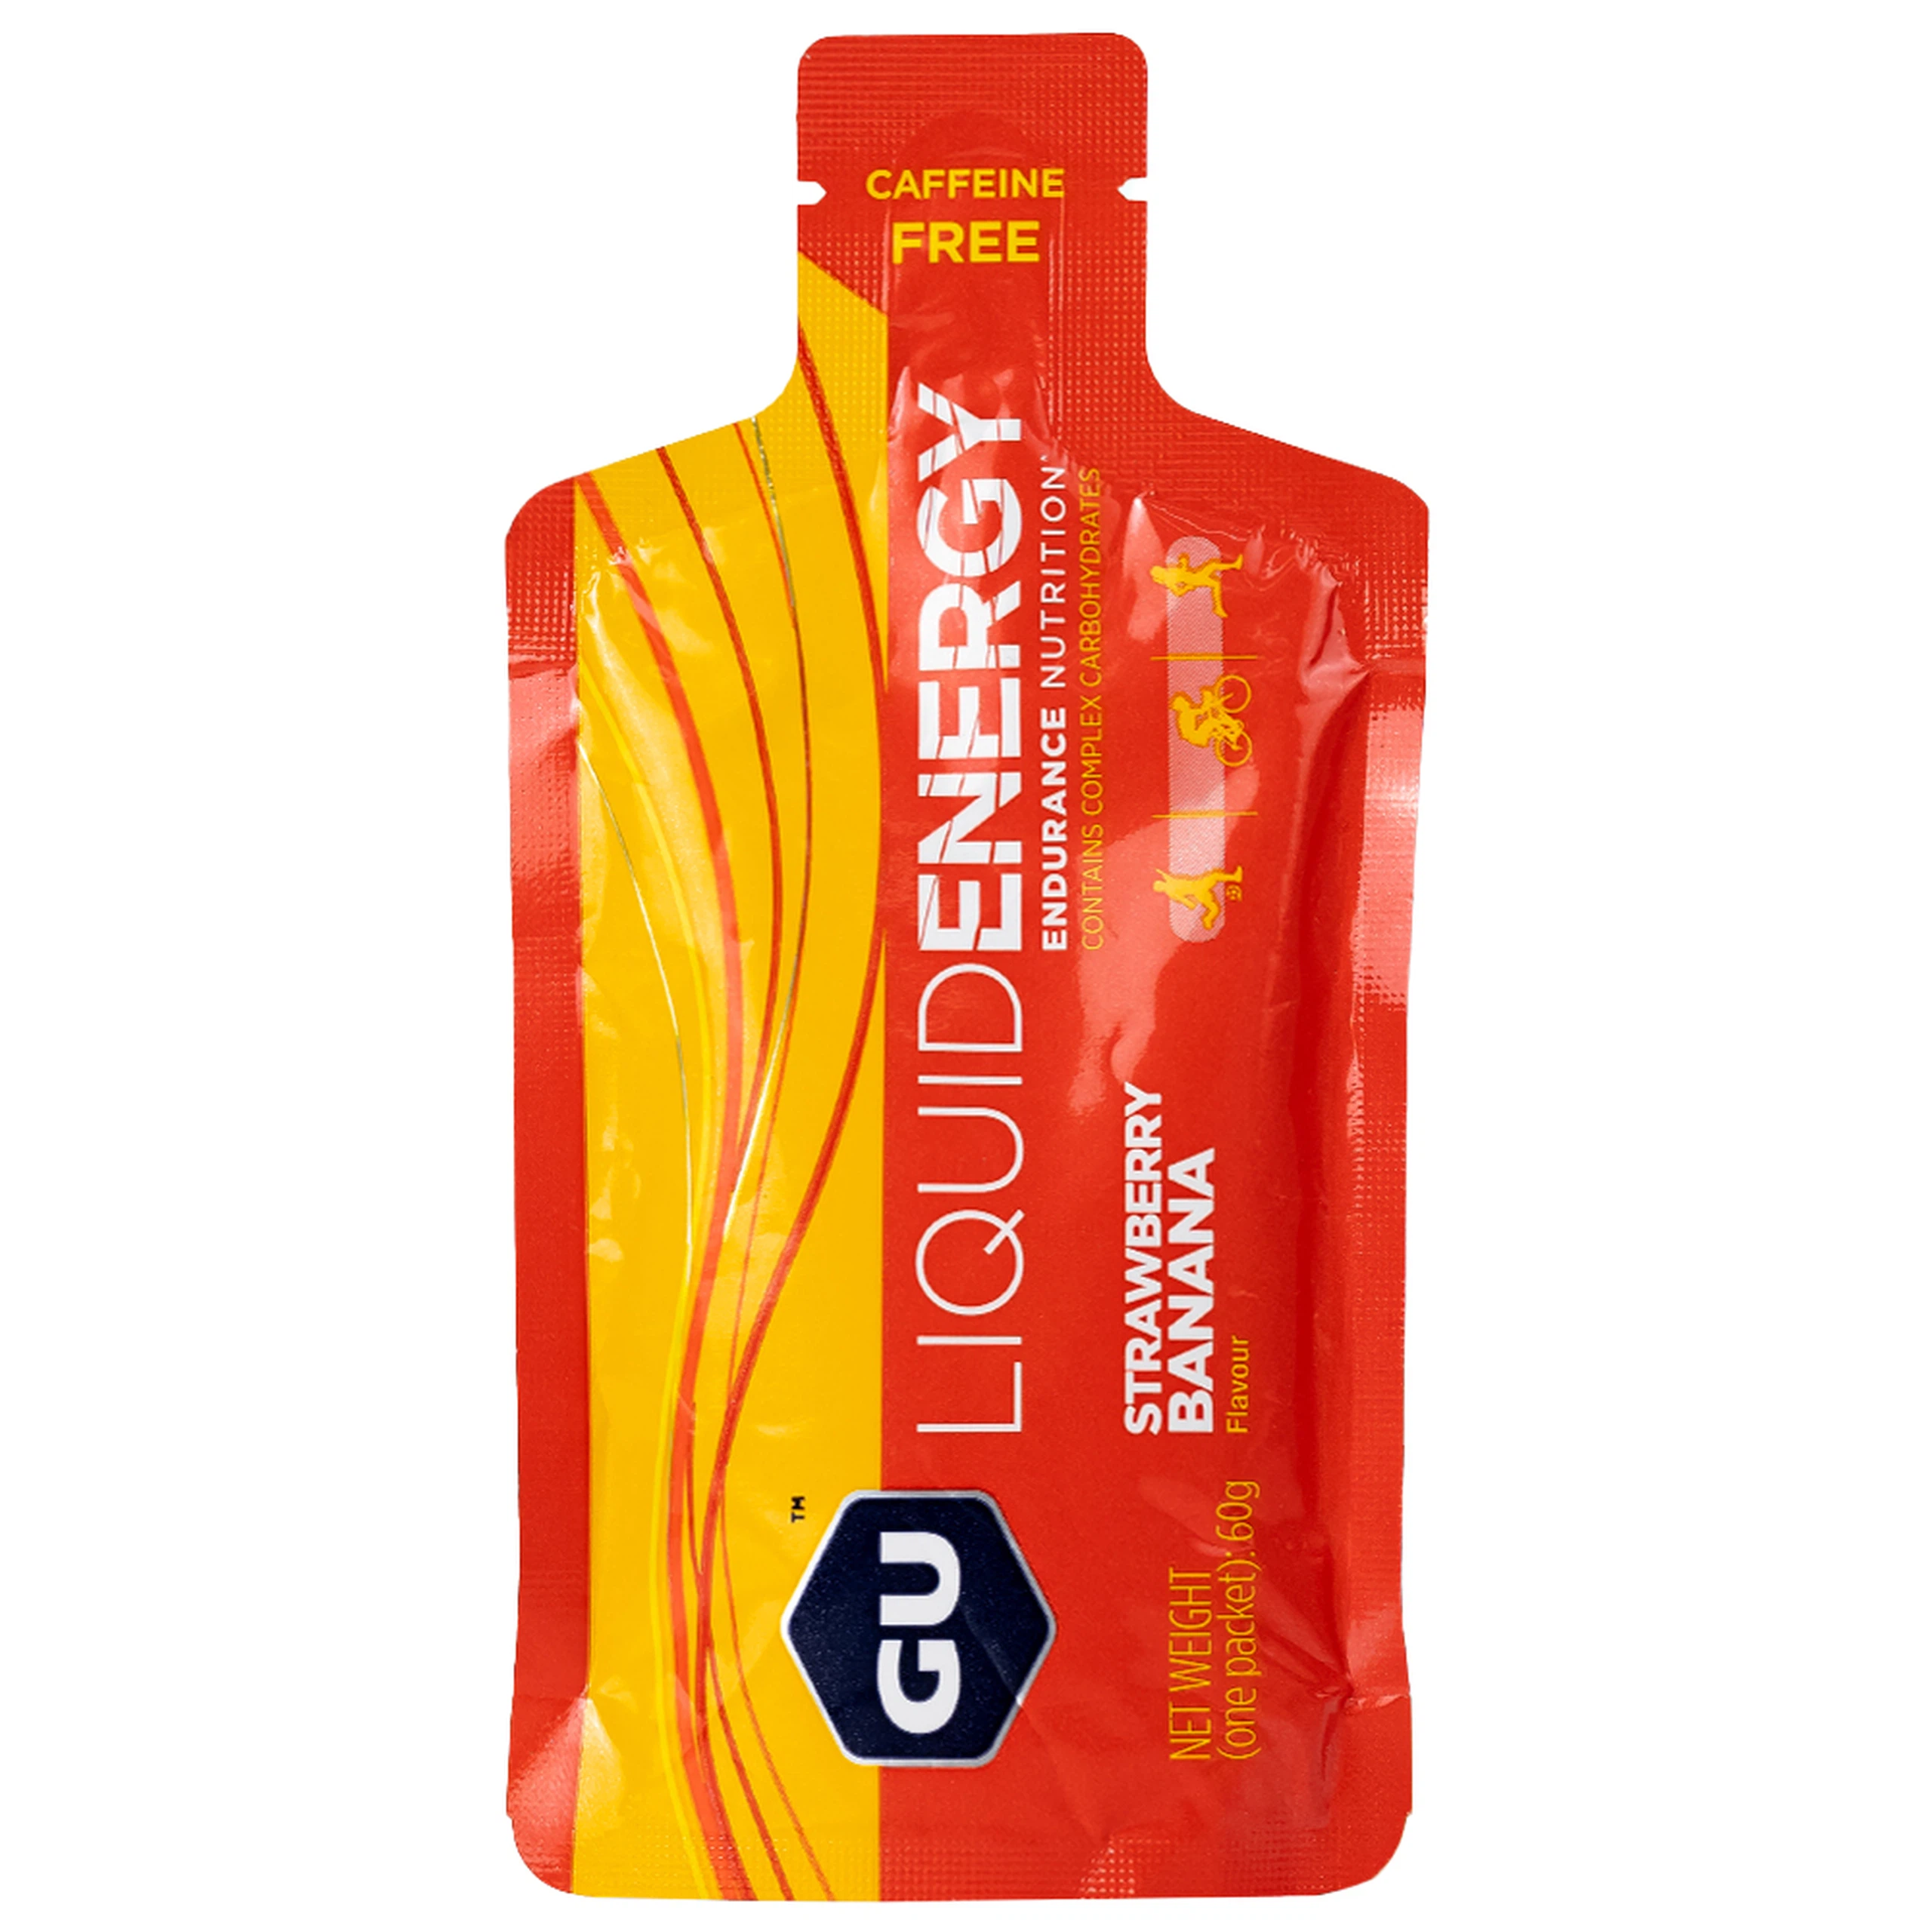 Thực phẩm bổ sung GU Gel Liquid Energy Strawberry Banana 60g bổ sung năng lượng trong các hoạt động thể thao